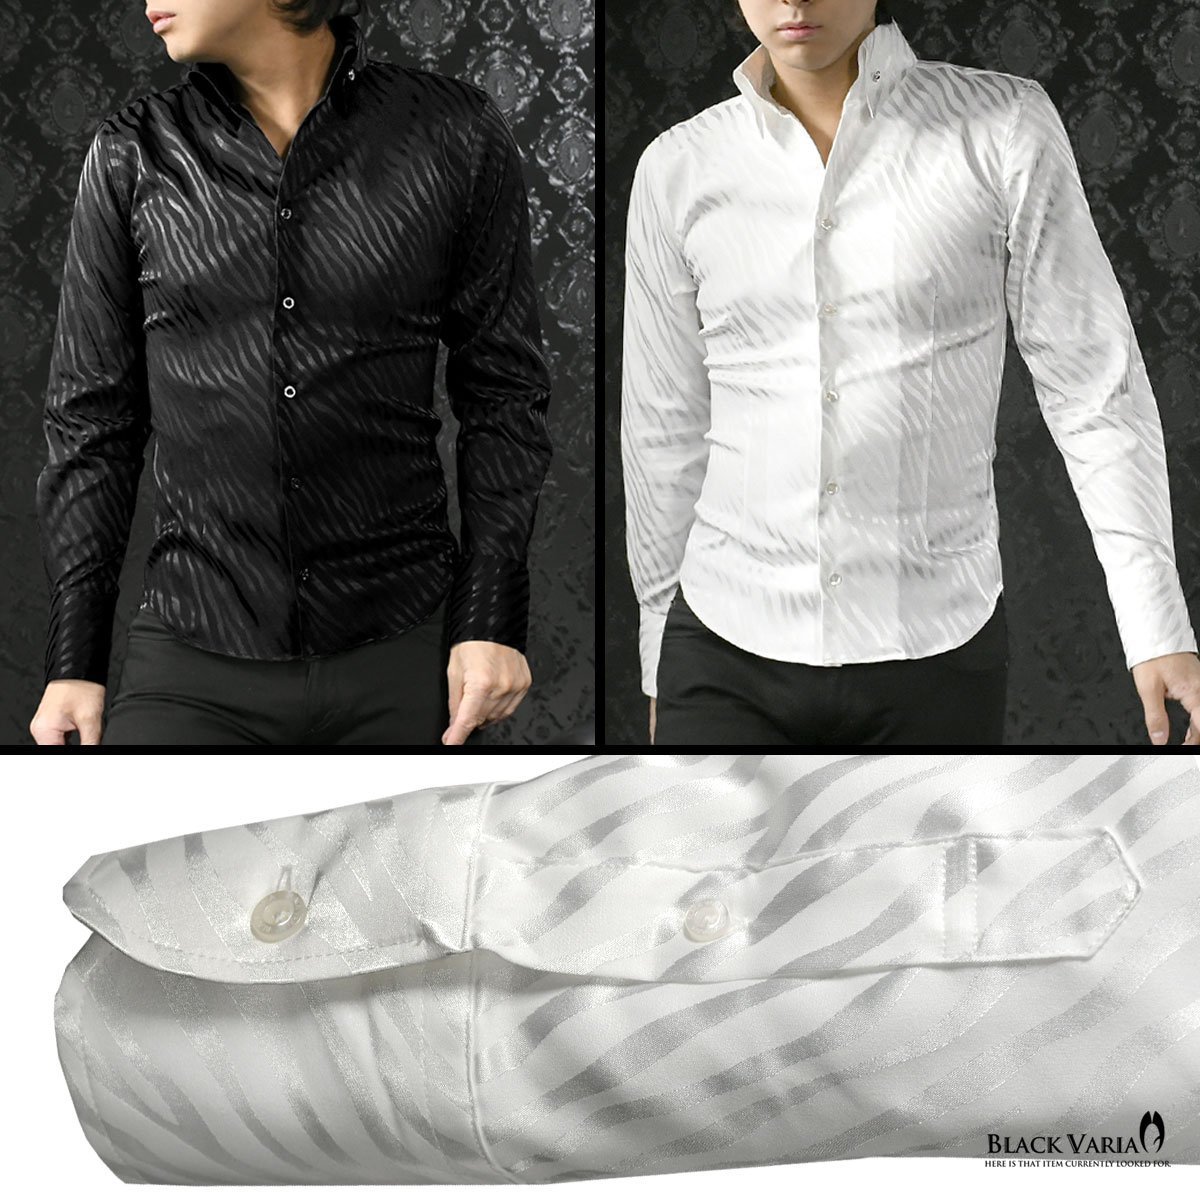 181724-wh BlackVaria サテンシャツ ドレスシャツ スキッパー ゼブラ柄 ジャガード ボタンダウン スリム メンズ(ホワイト白) L パーティー_画像3